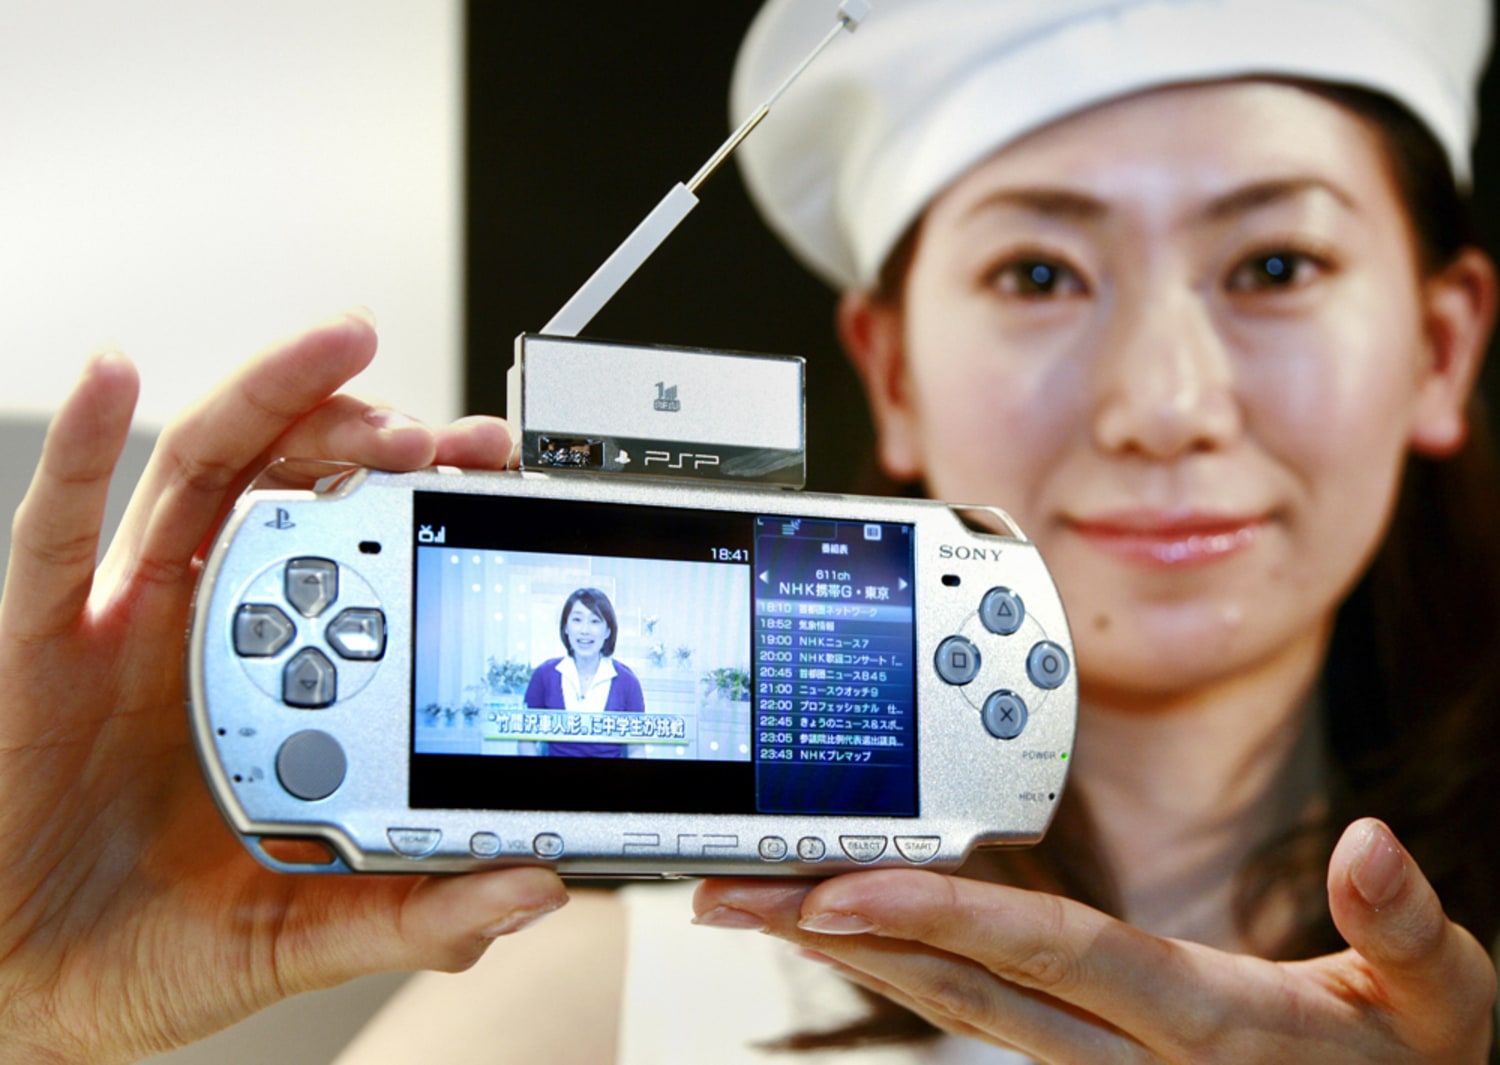 Almægtig stole Nødvendig Sony sets price for new, slimmer PSP